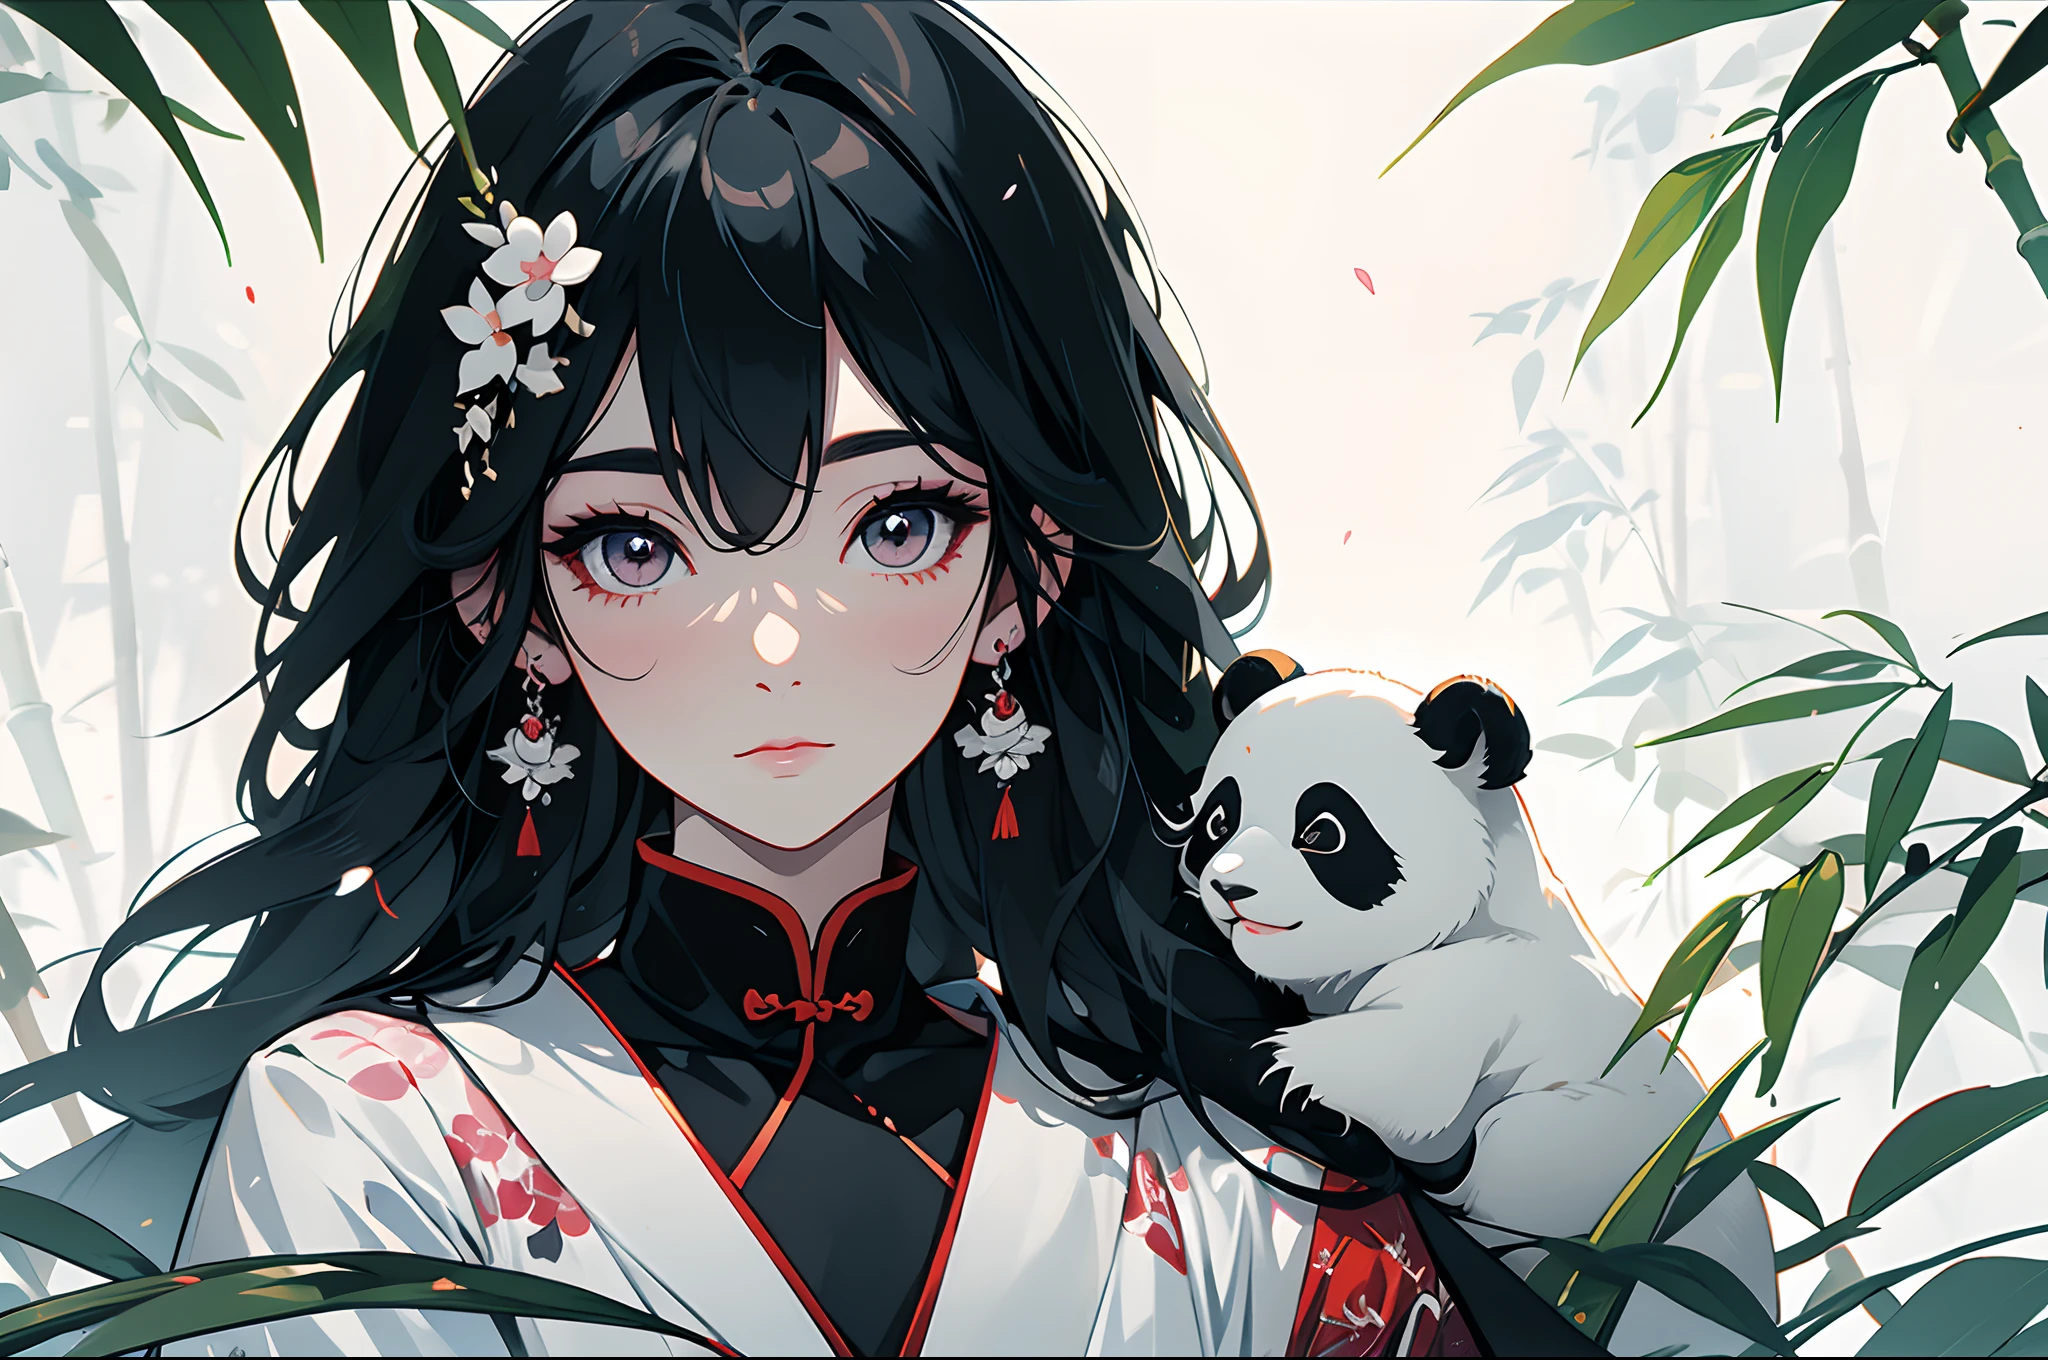 weißer Hintergrund，Unter Bambusblättern, (Der Panda sitzt auf einem Ast)，Pandas，（1Kleines Mädchen：1.5，Der obere Teil des Körpers，Betrachter betrachten），Rosa und weiße Kleidung，Gesichts-Nahaufnahmen，große schöne Augen，detailliertes Gesicht mit，Auffällige Kleidung，Ätherischer Panda，(Chinesischer Panda)，verträumt，Onmyoji detaillierte Kunst，eine wunderschöne Kunstwerkillustration，Mythologische Kreaturen，Pandas，wunderschöne digitale Kunstwerke